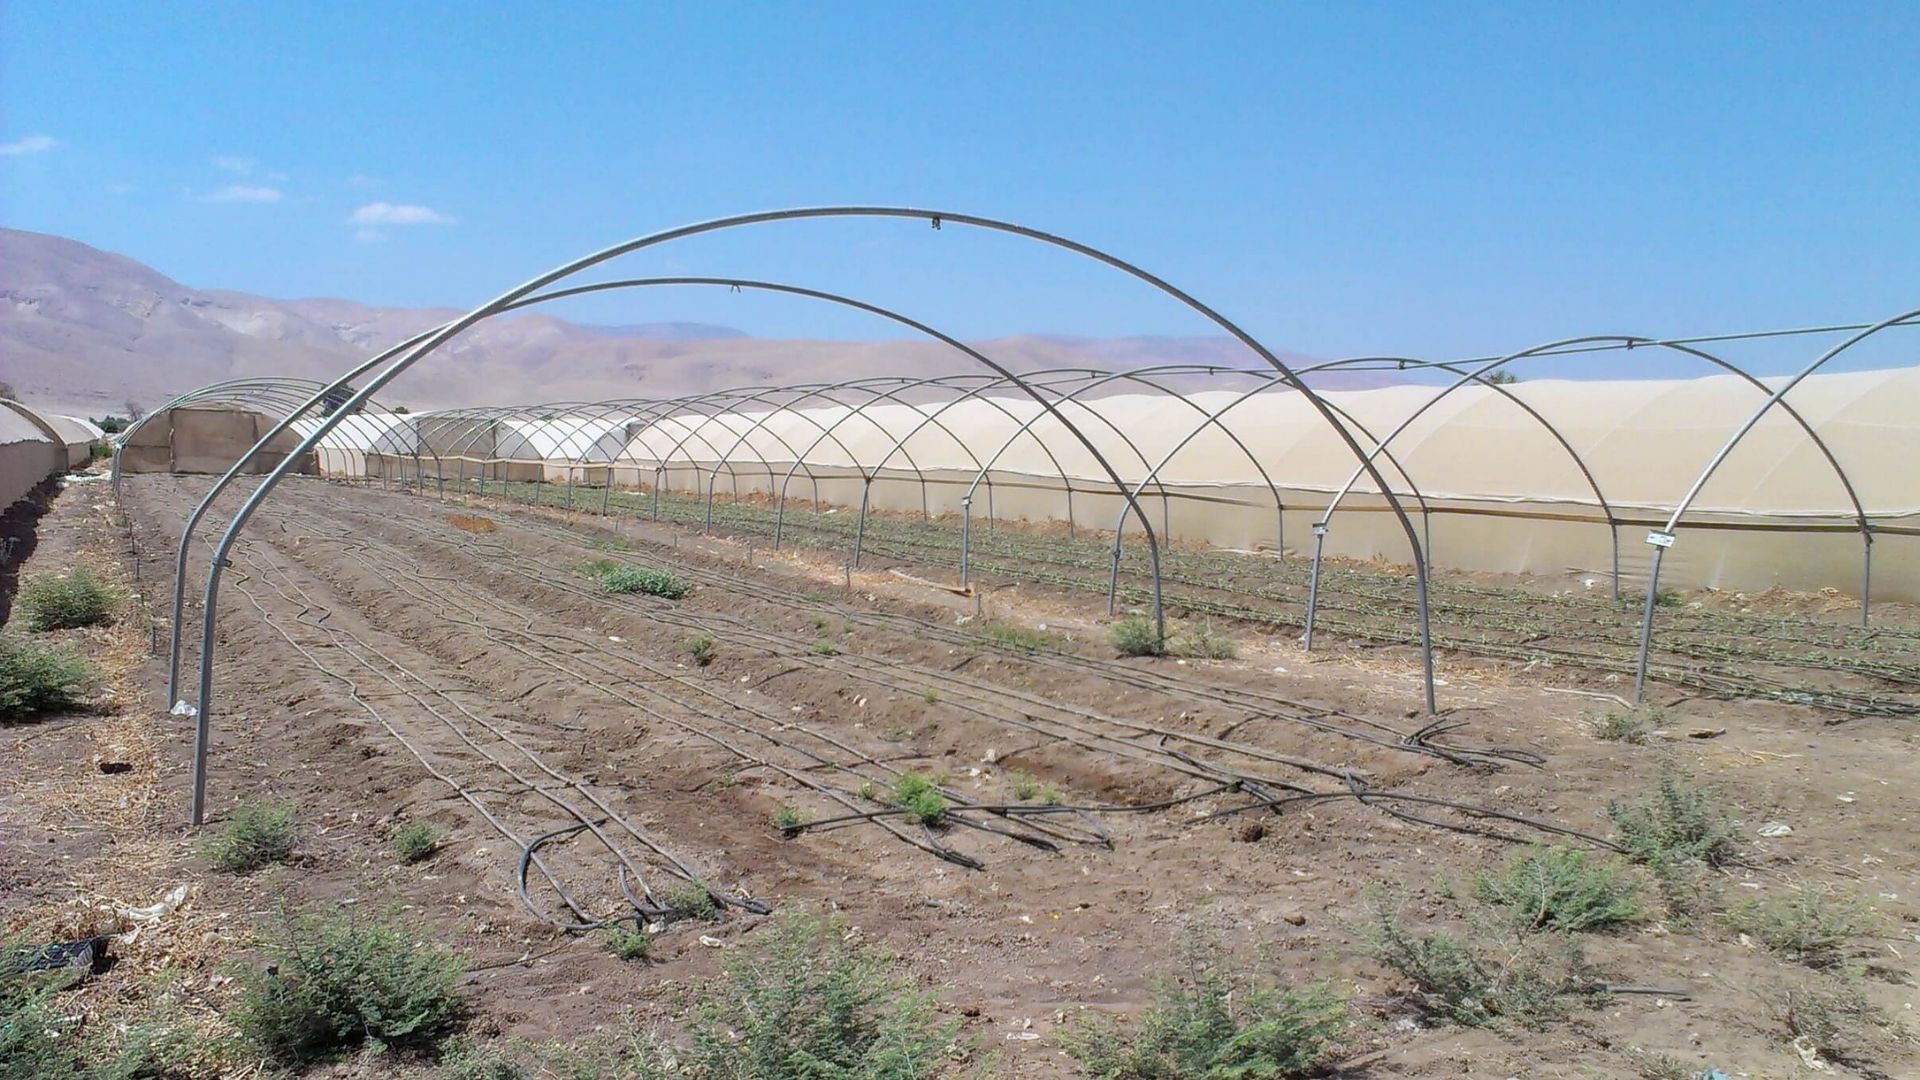 USAID AQUA4D projecto de irrigação em palestino